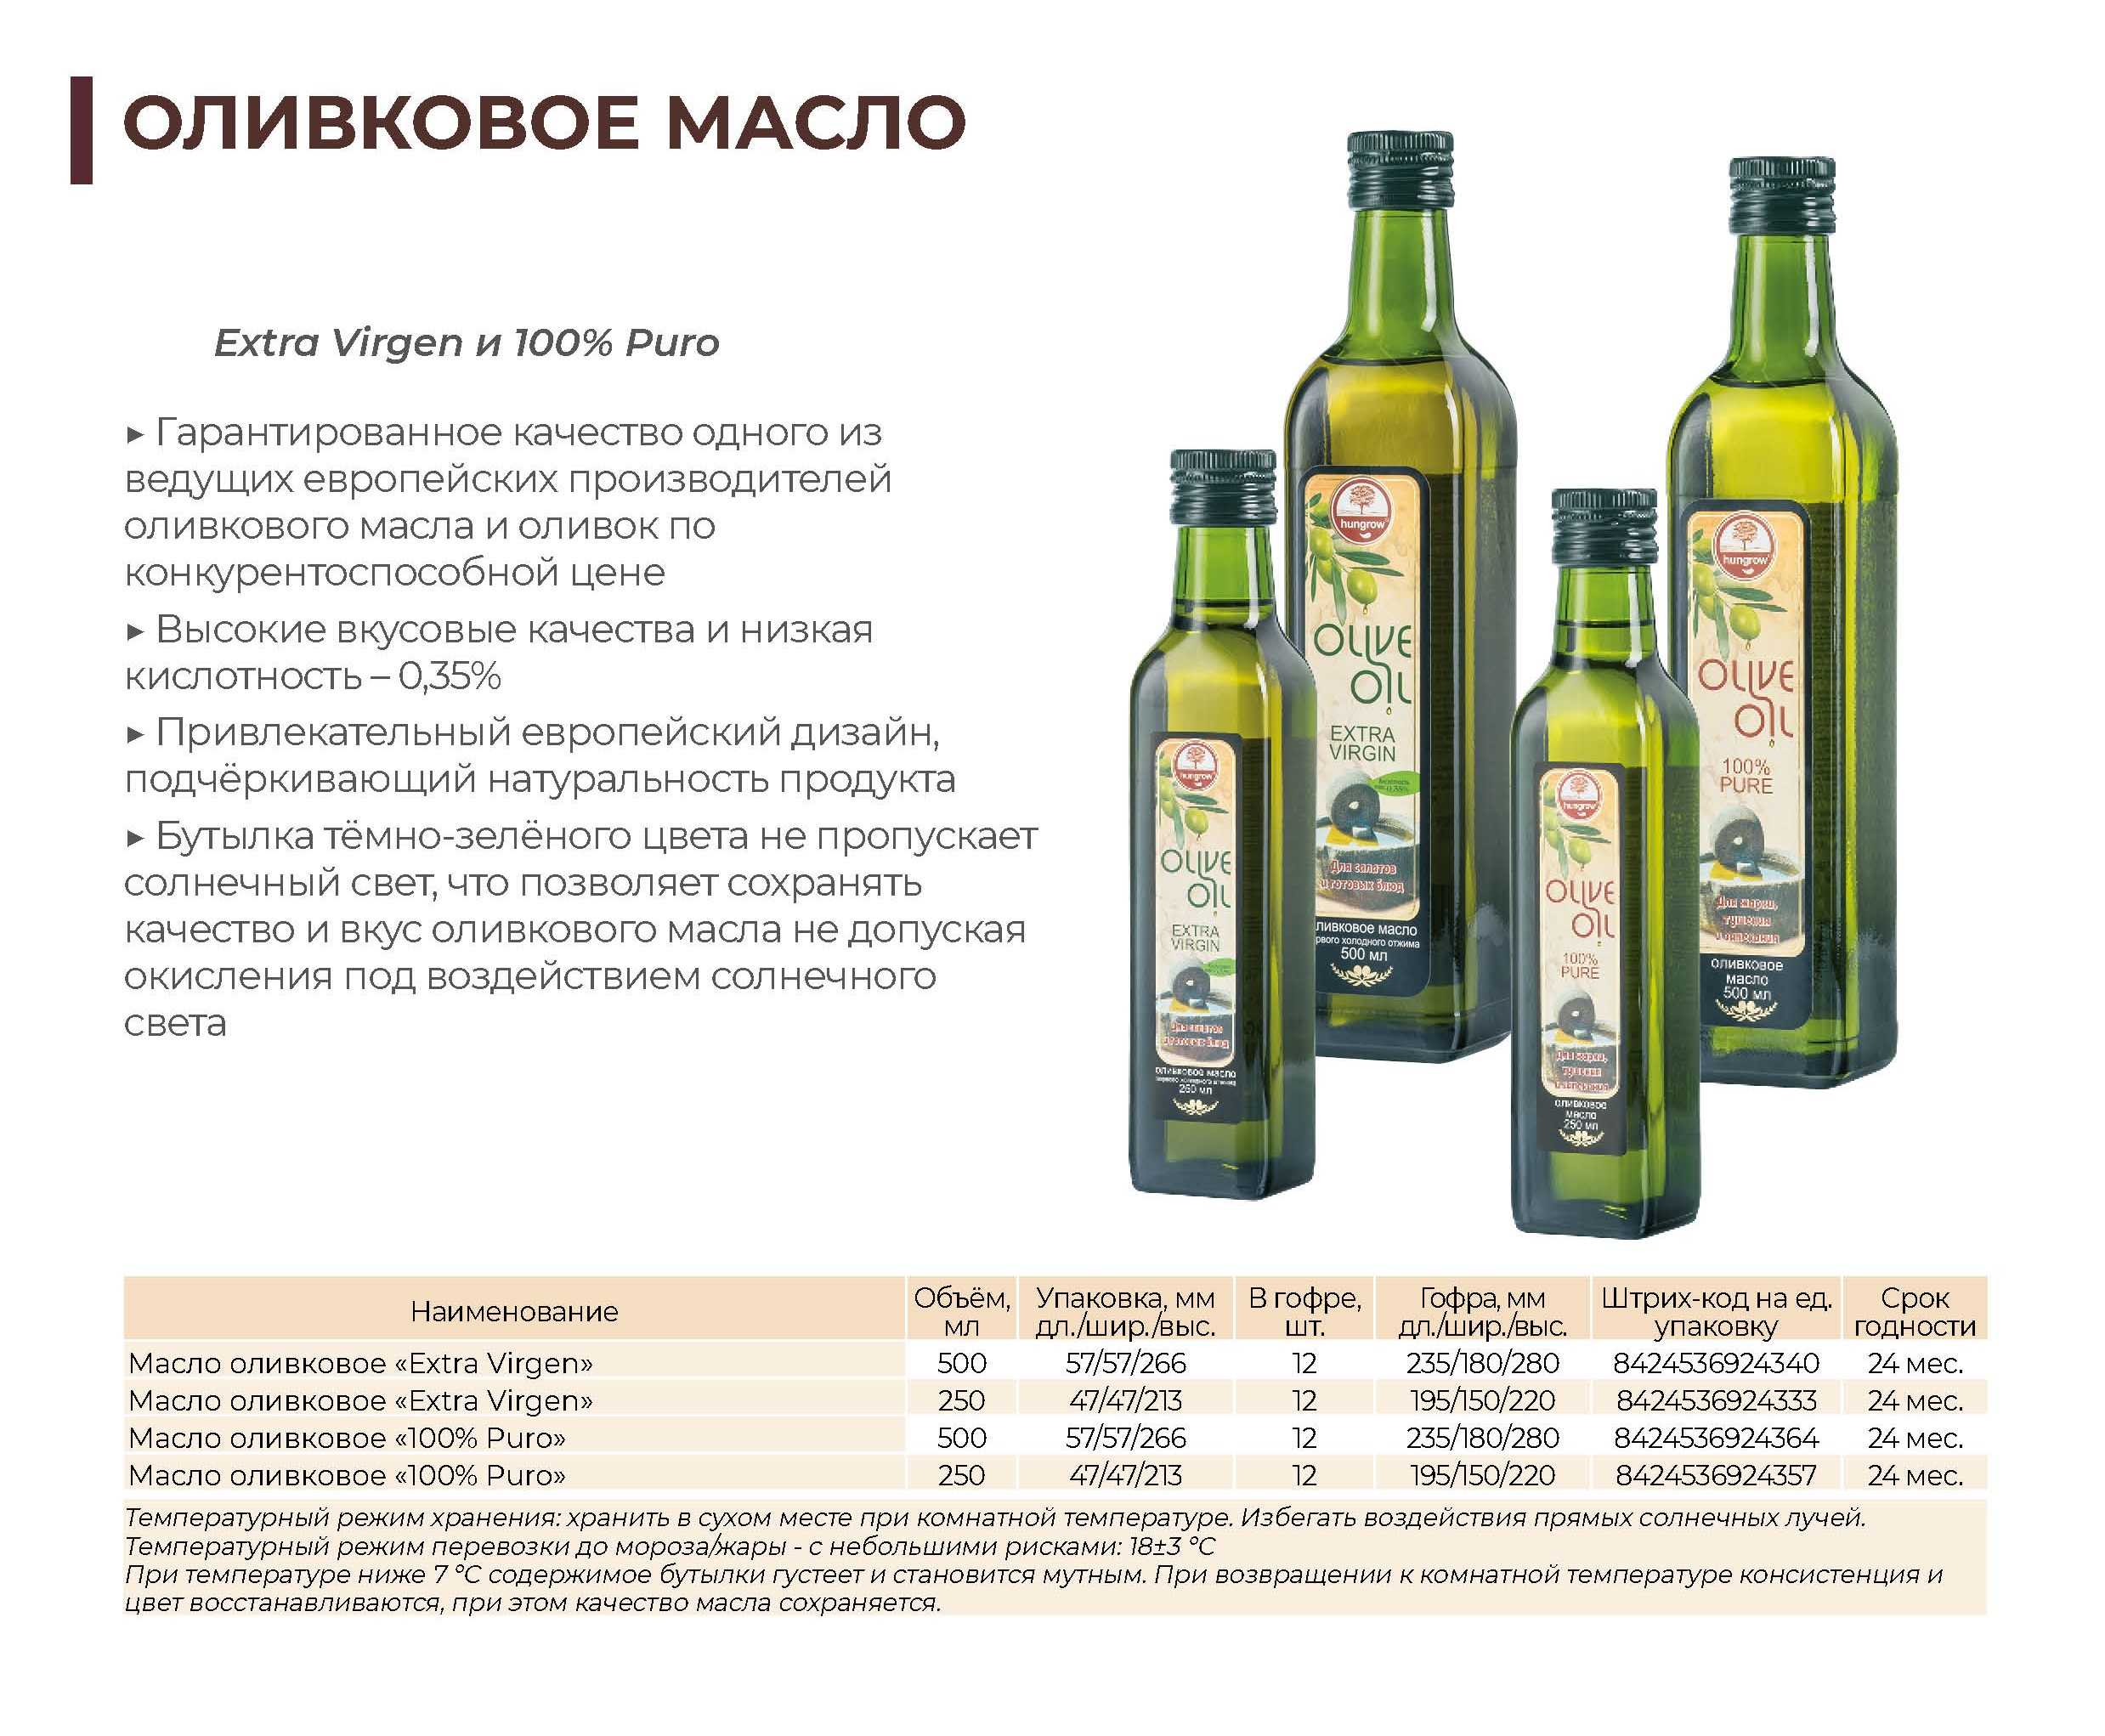 Как выбрать оливковое масло – семь главных правил и советы хозяйкам